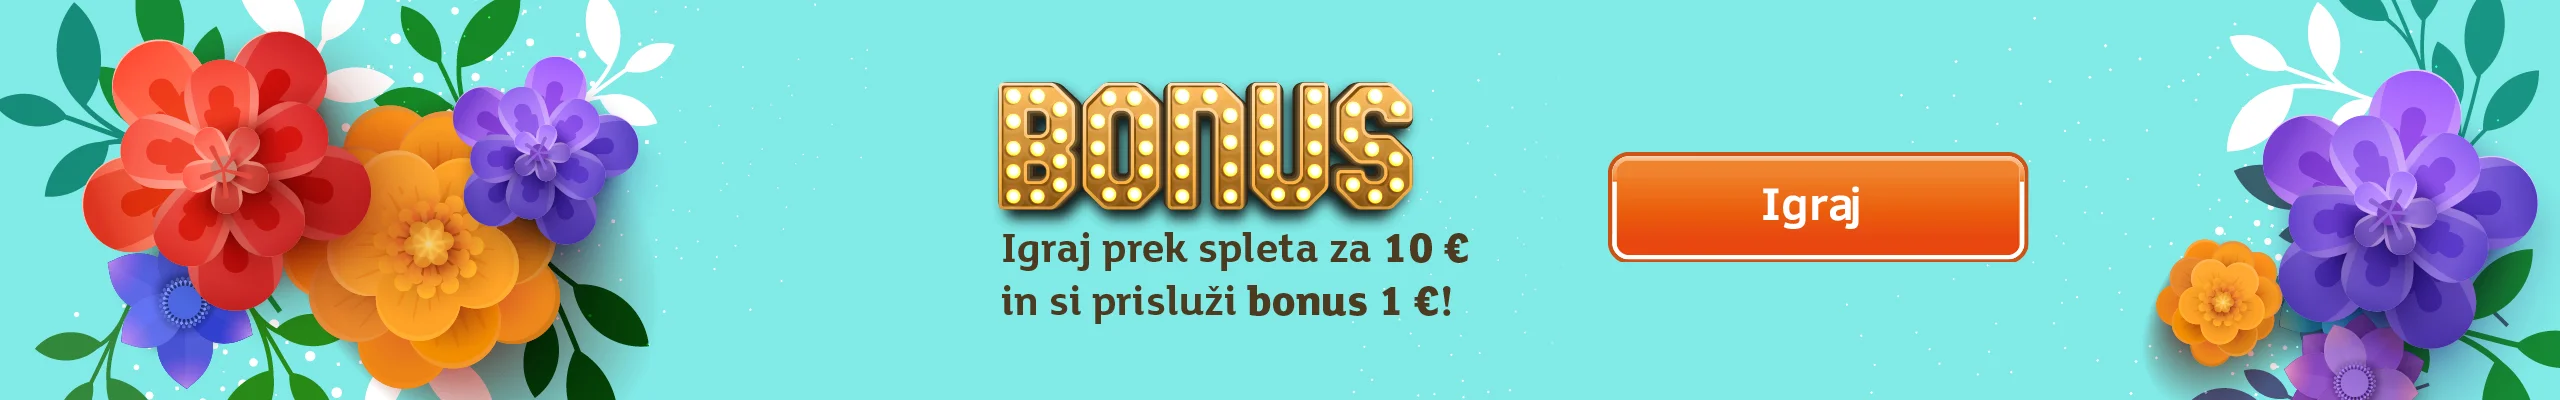 Pomladni bonus, Igraj prek spleta za 10 € in si prisluži bonus 1€!